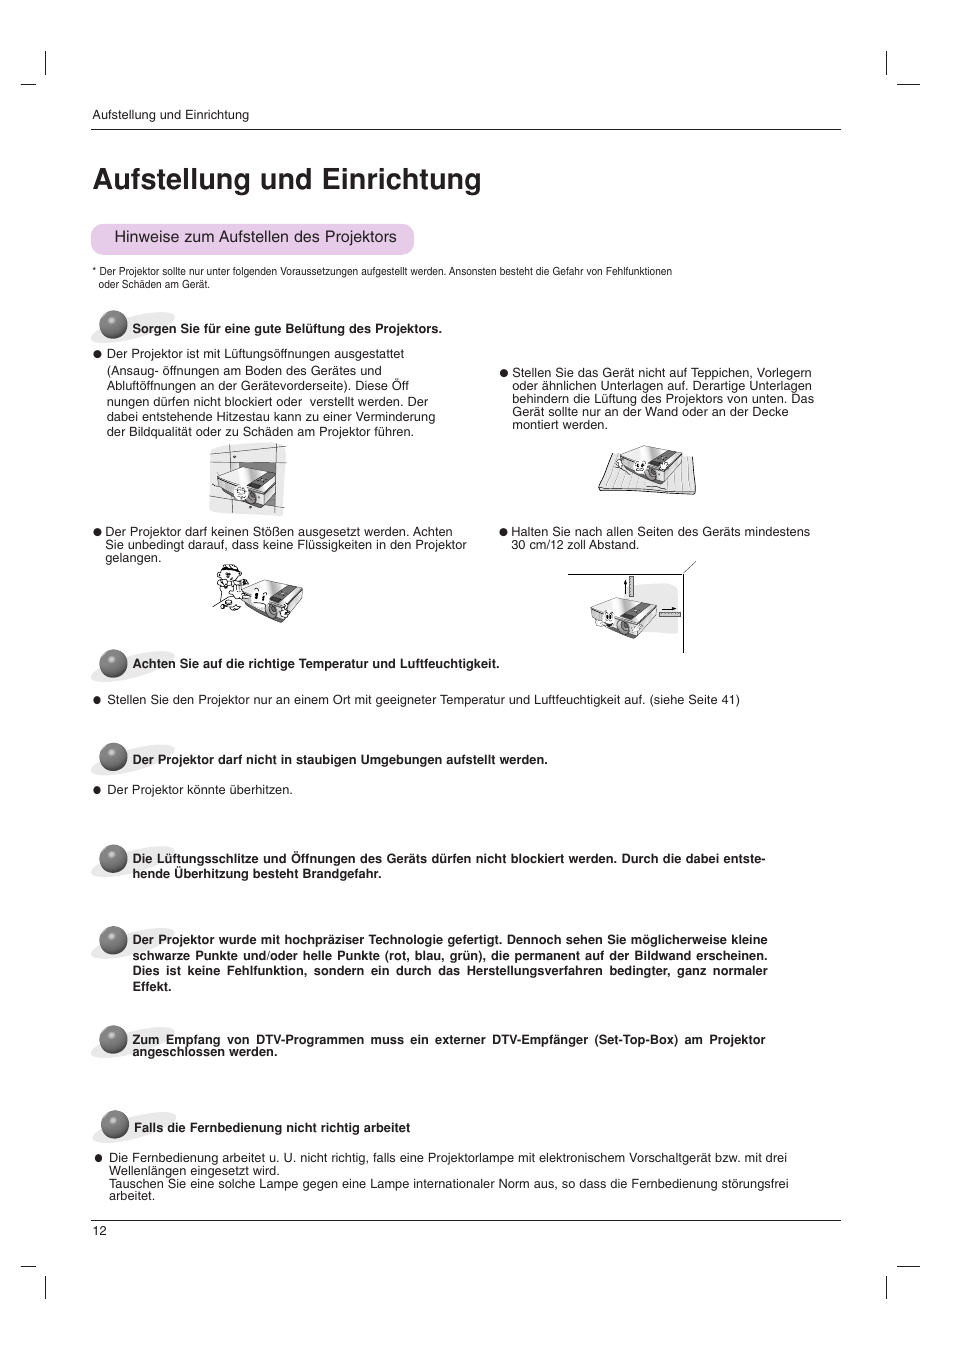 Aufstellung und einrichtung, Hinweise zum aufstellen des projektors | LG BX501B Benutzerhandbuch | Seite 12 / 42